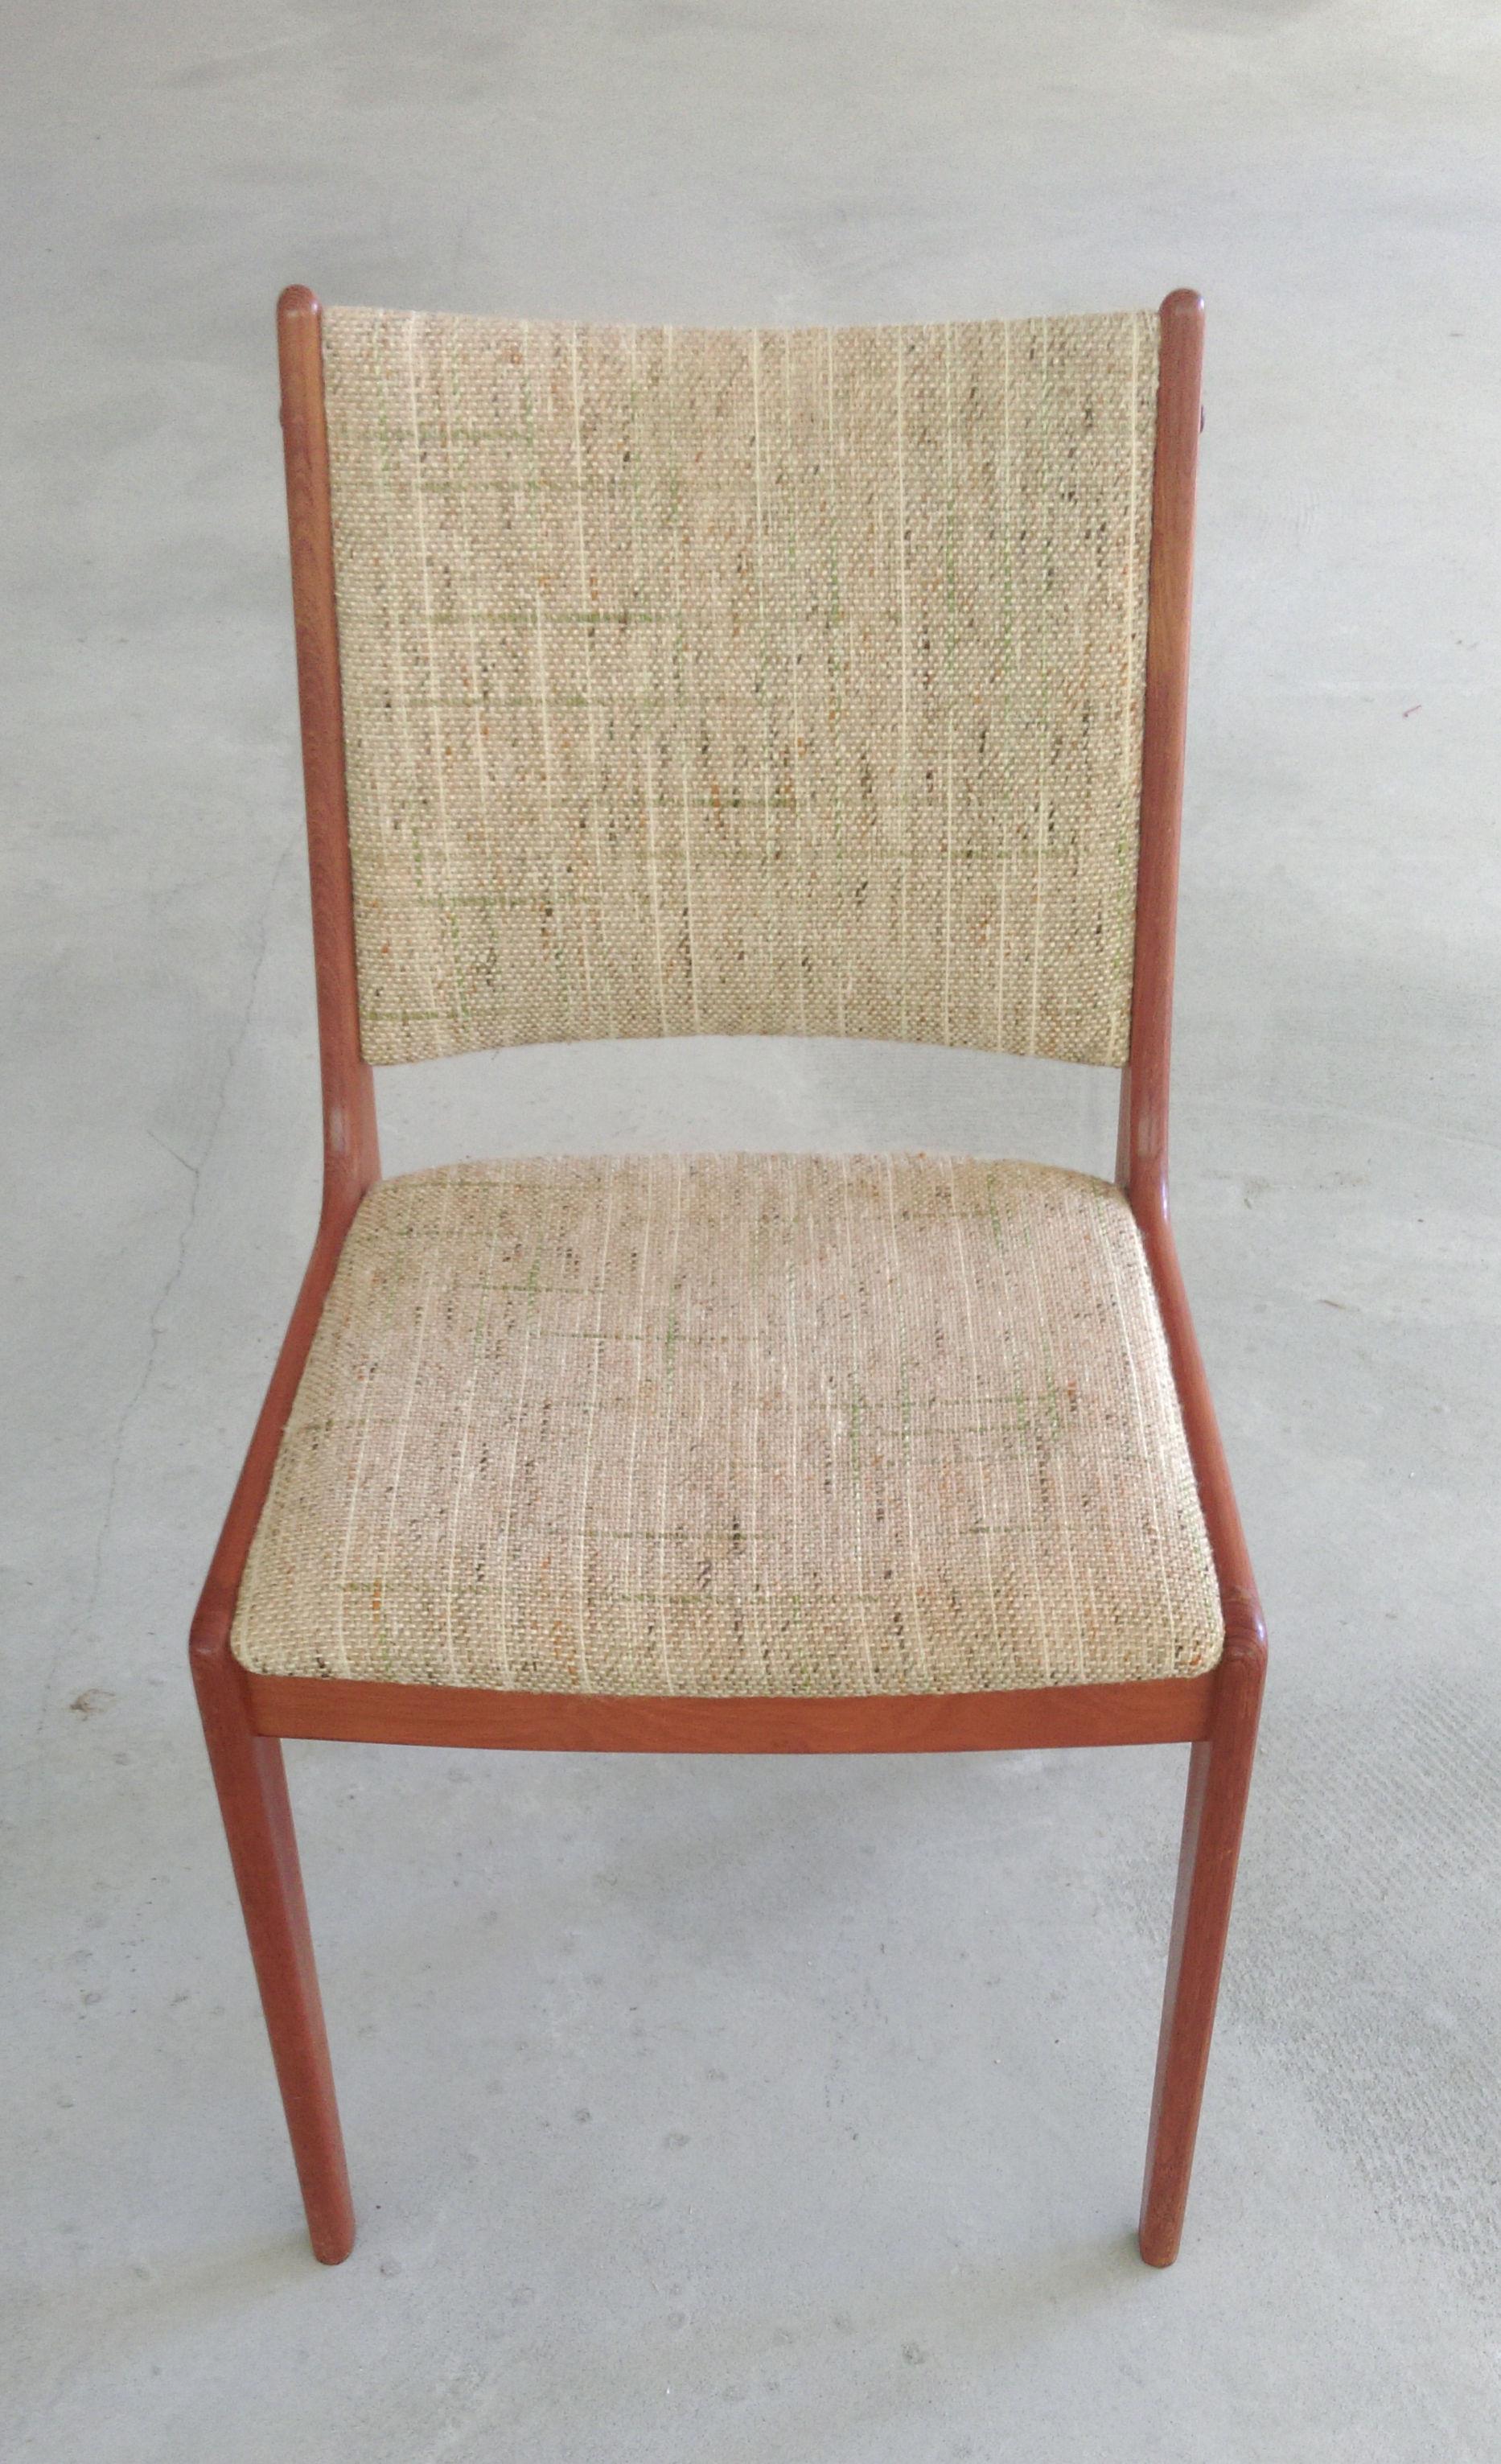 Ensemble de douze chaises de salle à manger Johannes Andersen en teck, fabriquées par Uldum Møbler, Danemark.

Les chaises de salle à manger présentent un design simple et élégant qui s'intégrera parfaitement dans la plupart des maisons. 

Les